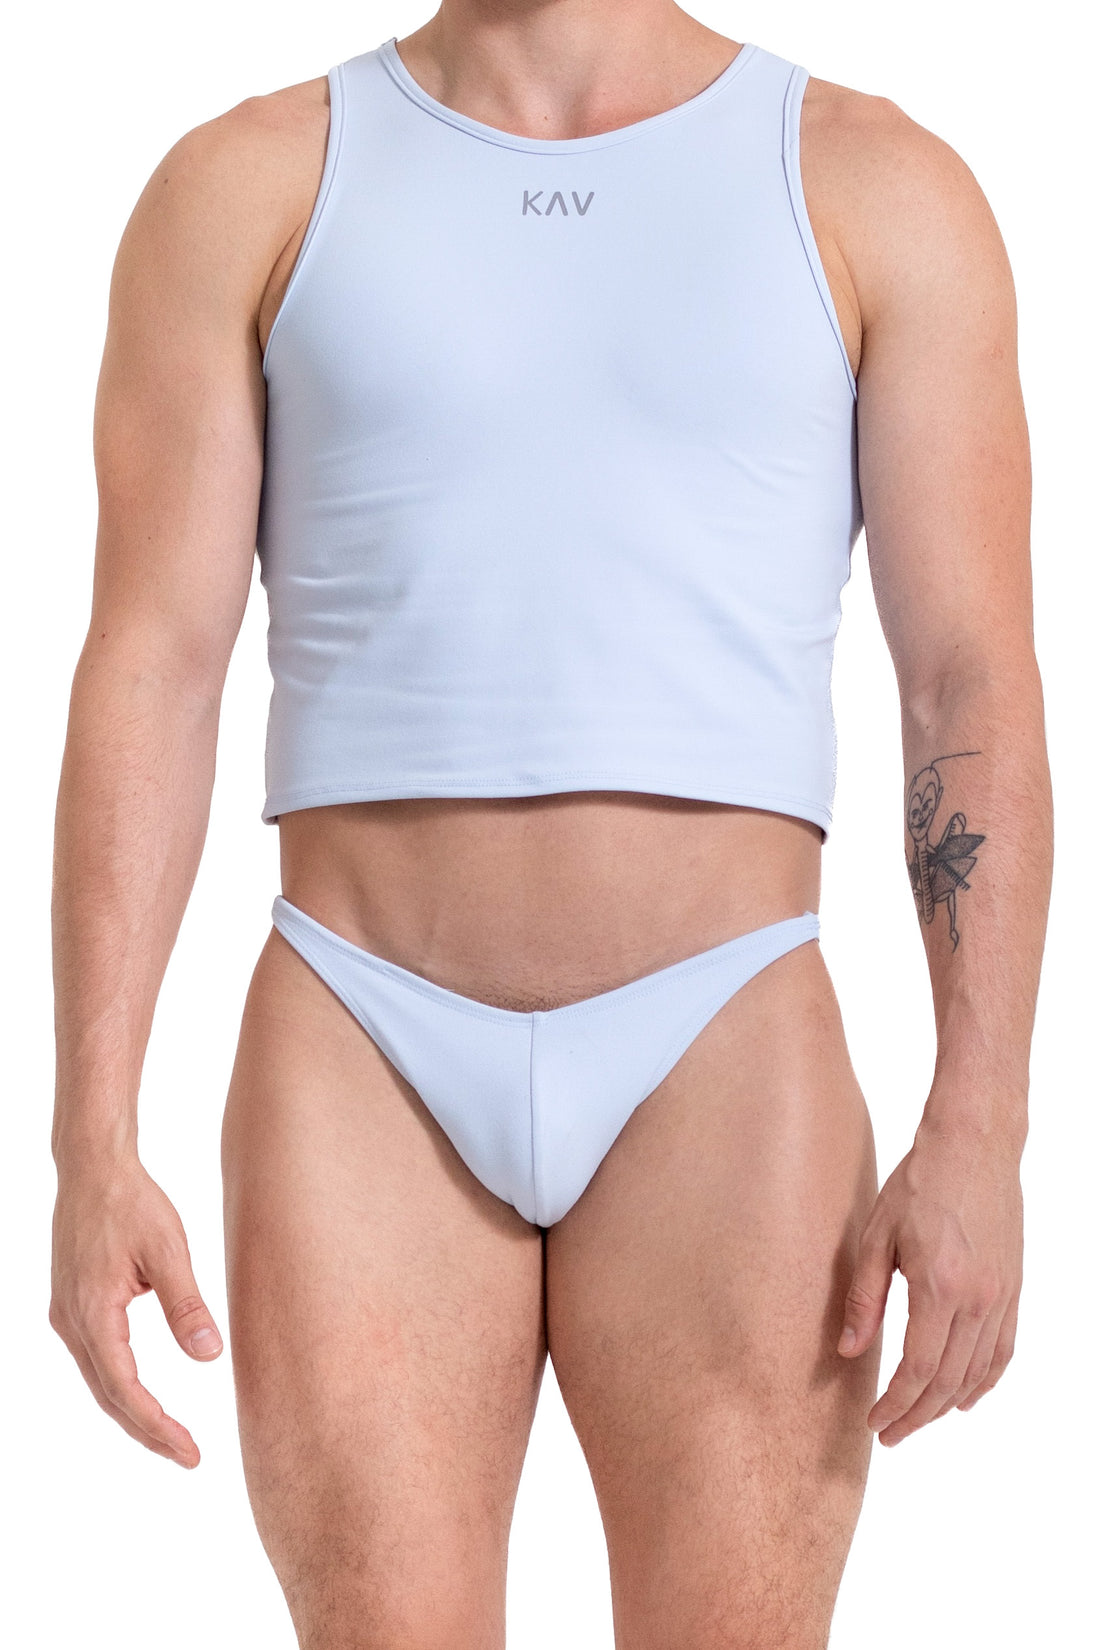 KAV Wear Underwear Men Bottoms –